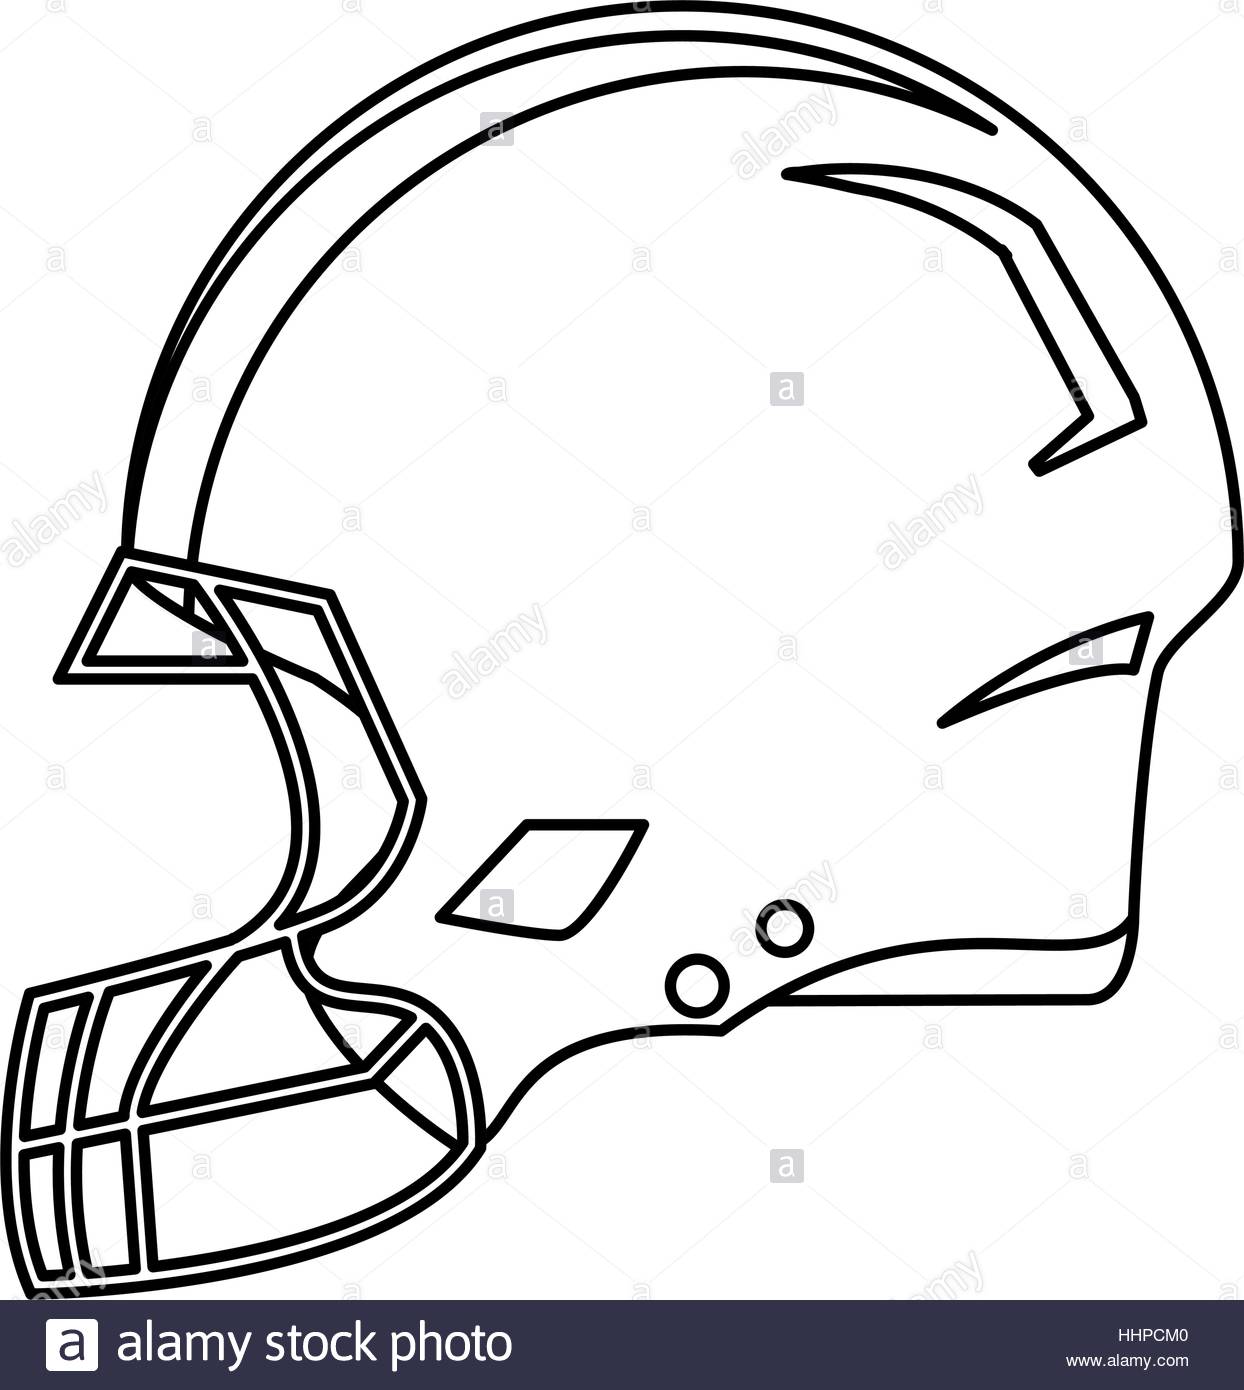 Football Helmet Silhouette Vector at GetDrawings | Free download